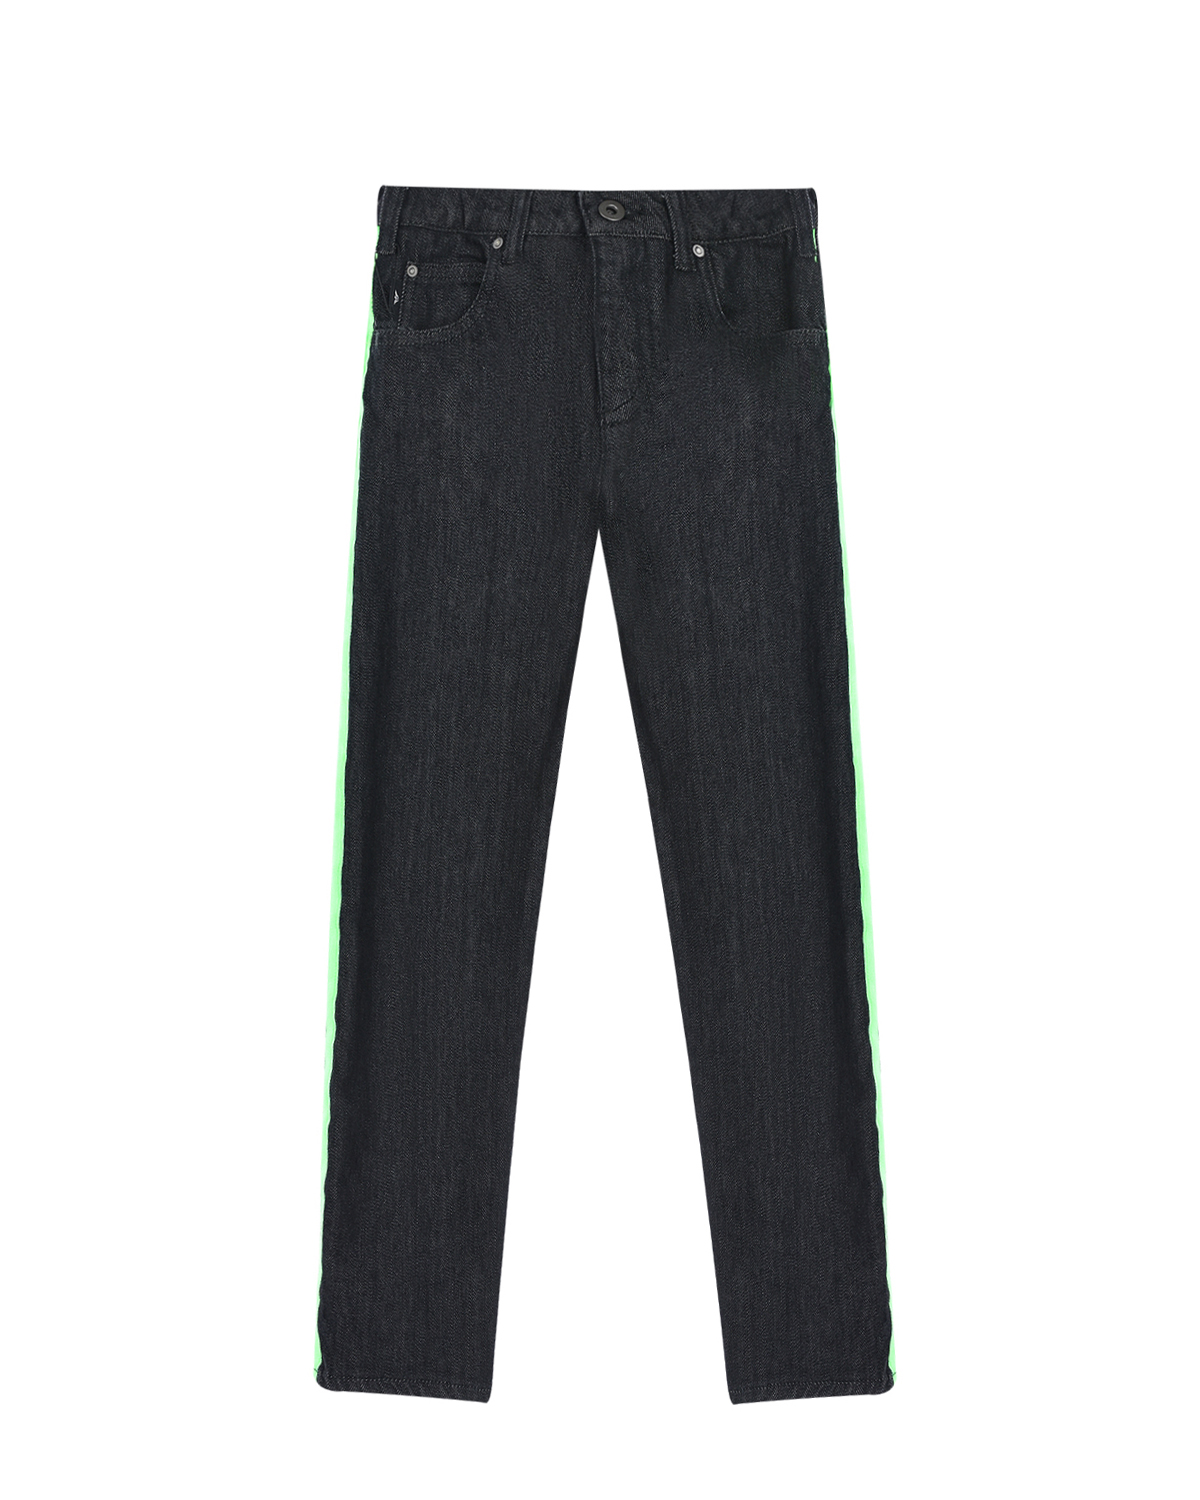 Черные джинсы с зелеными лампасами Emporio Armani детские - фото 1